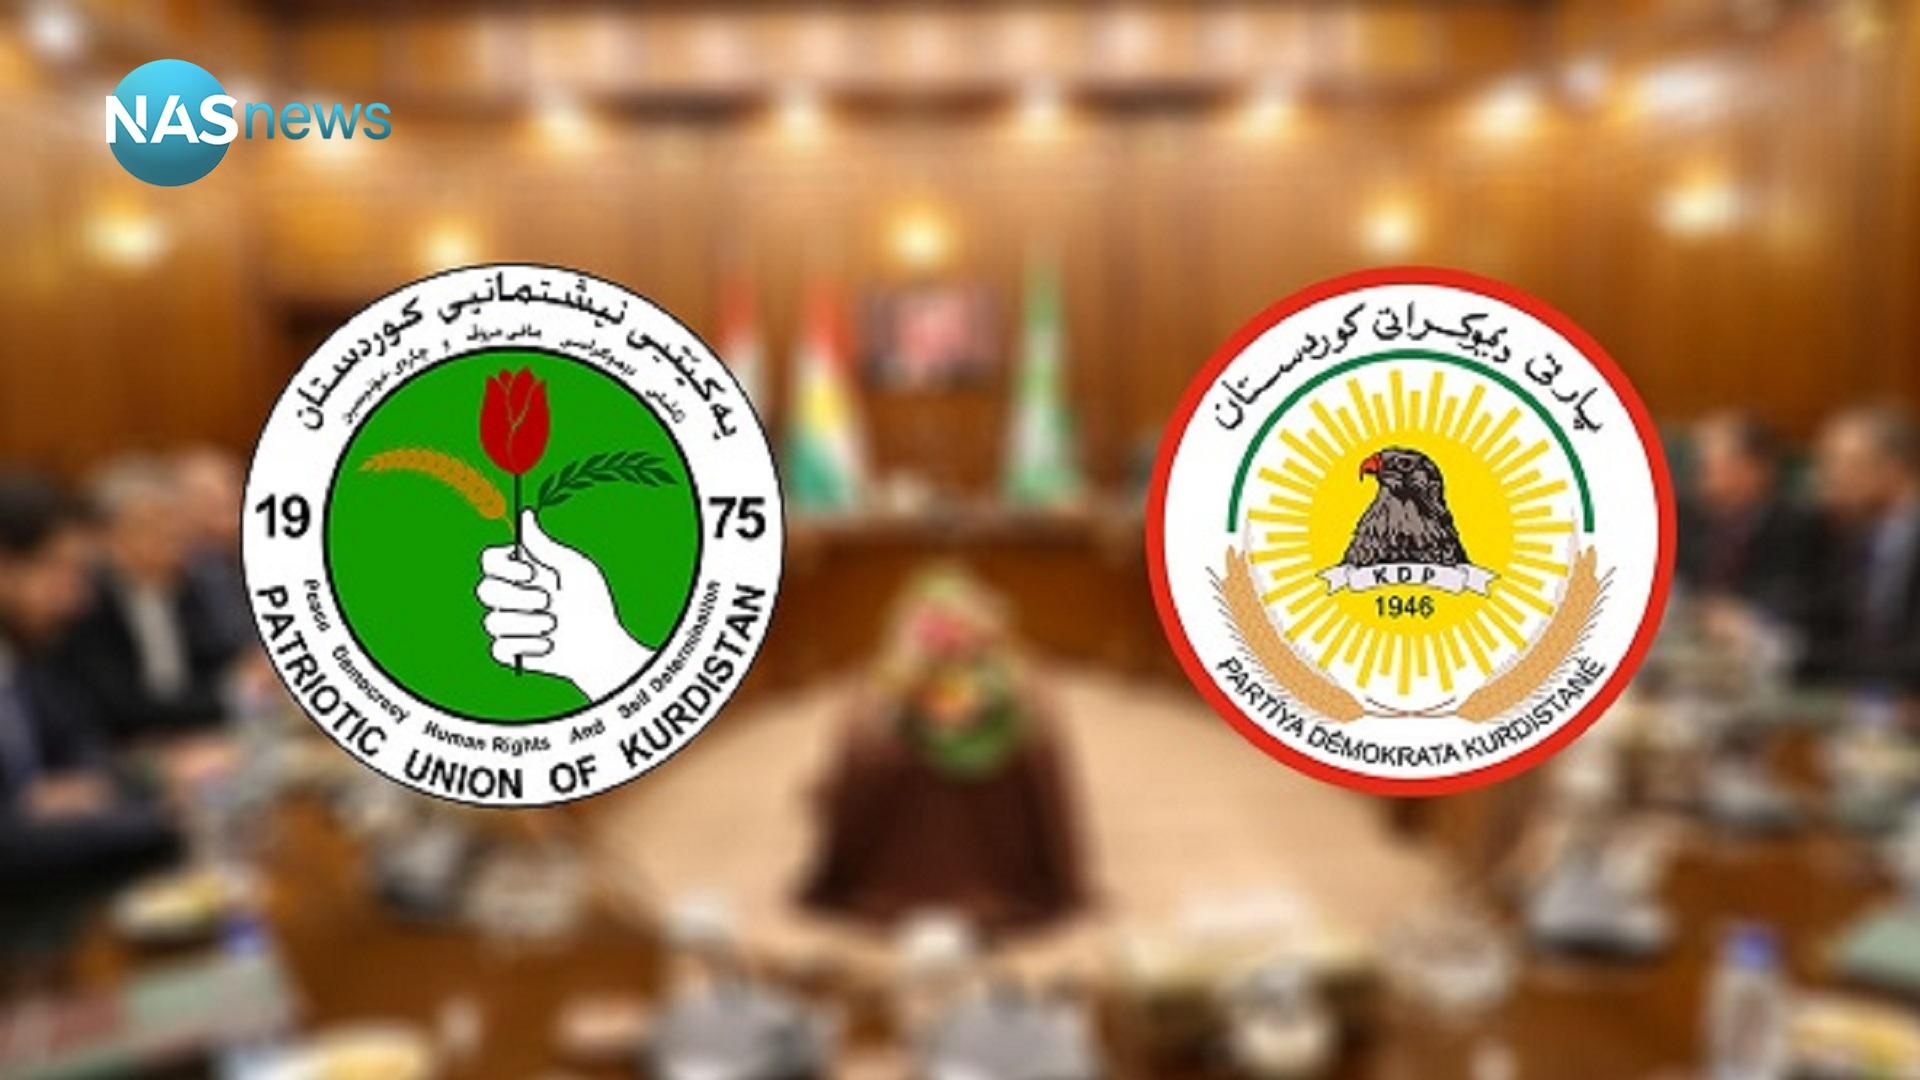 بین هیئت های اتحادیه میهنی  و حزب دموکرات بر سر همه مسائل انتخابات پارلمان کردستان  توافق وجود دارد